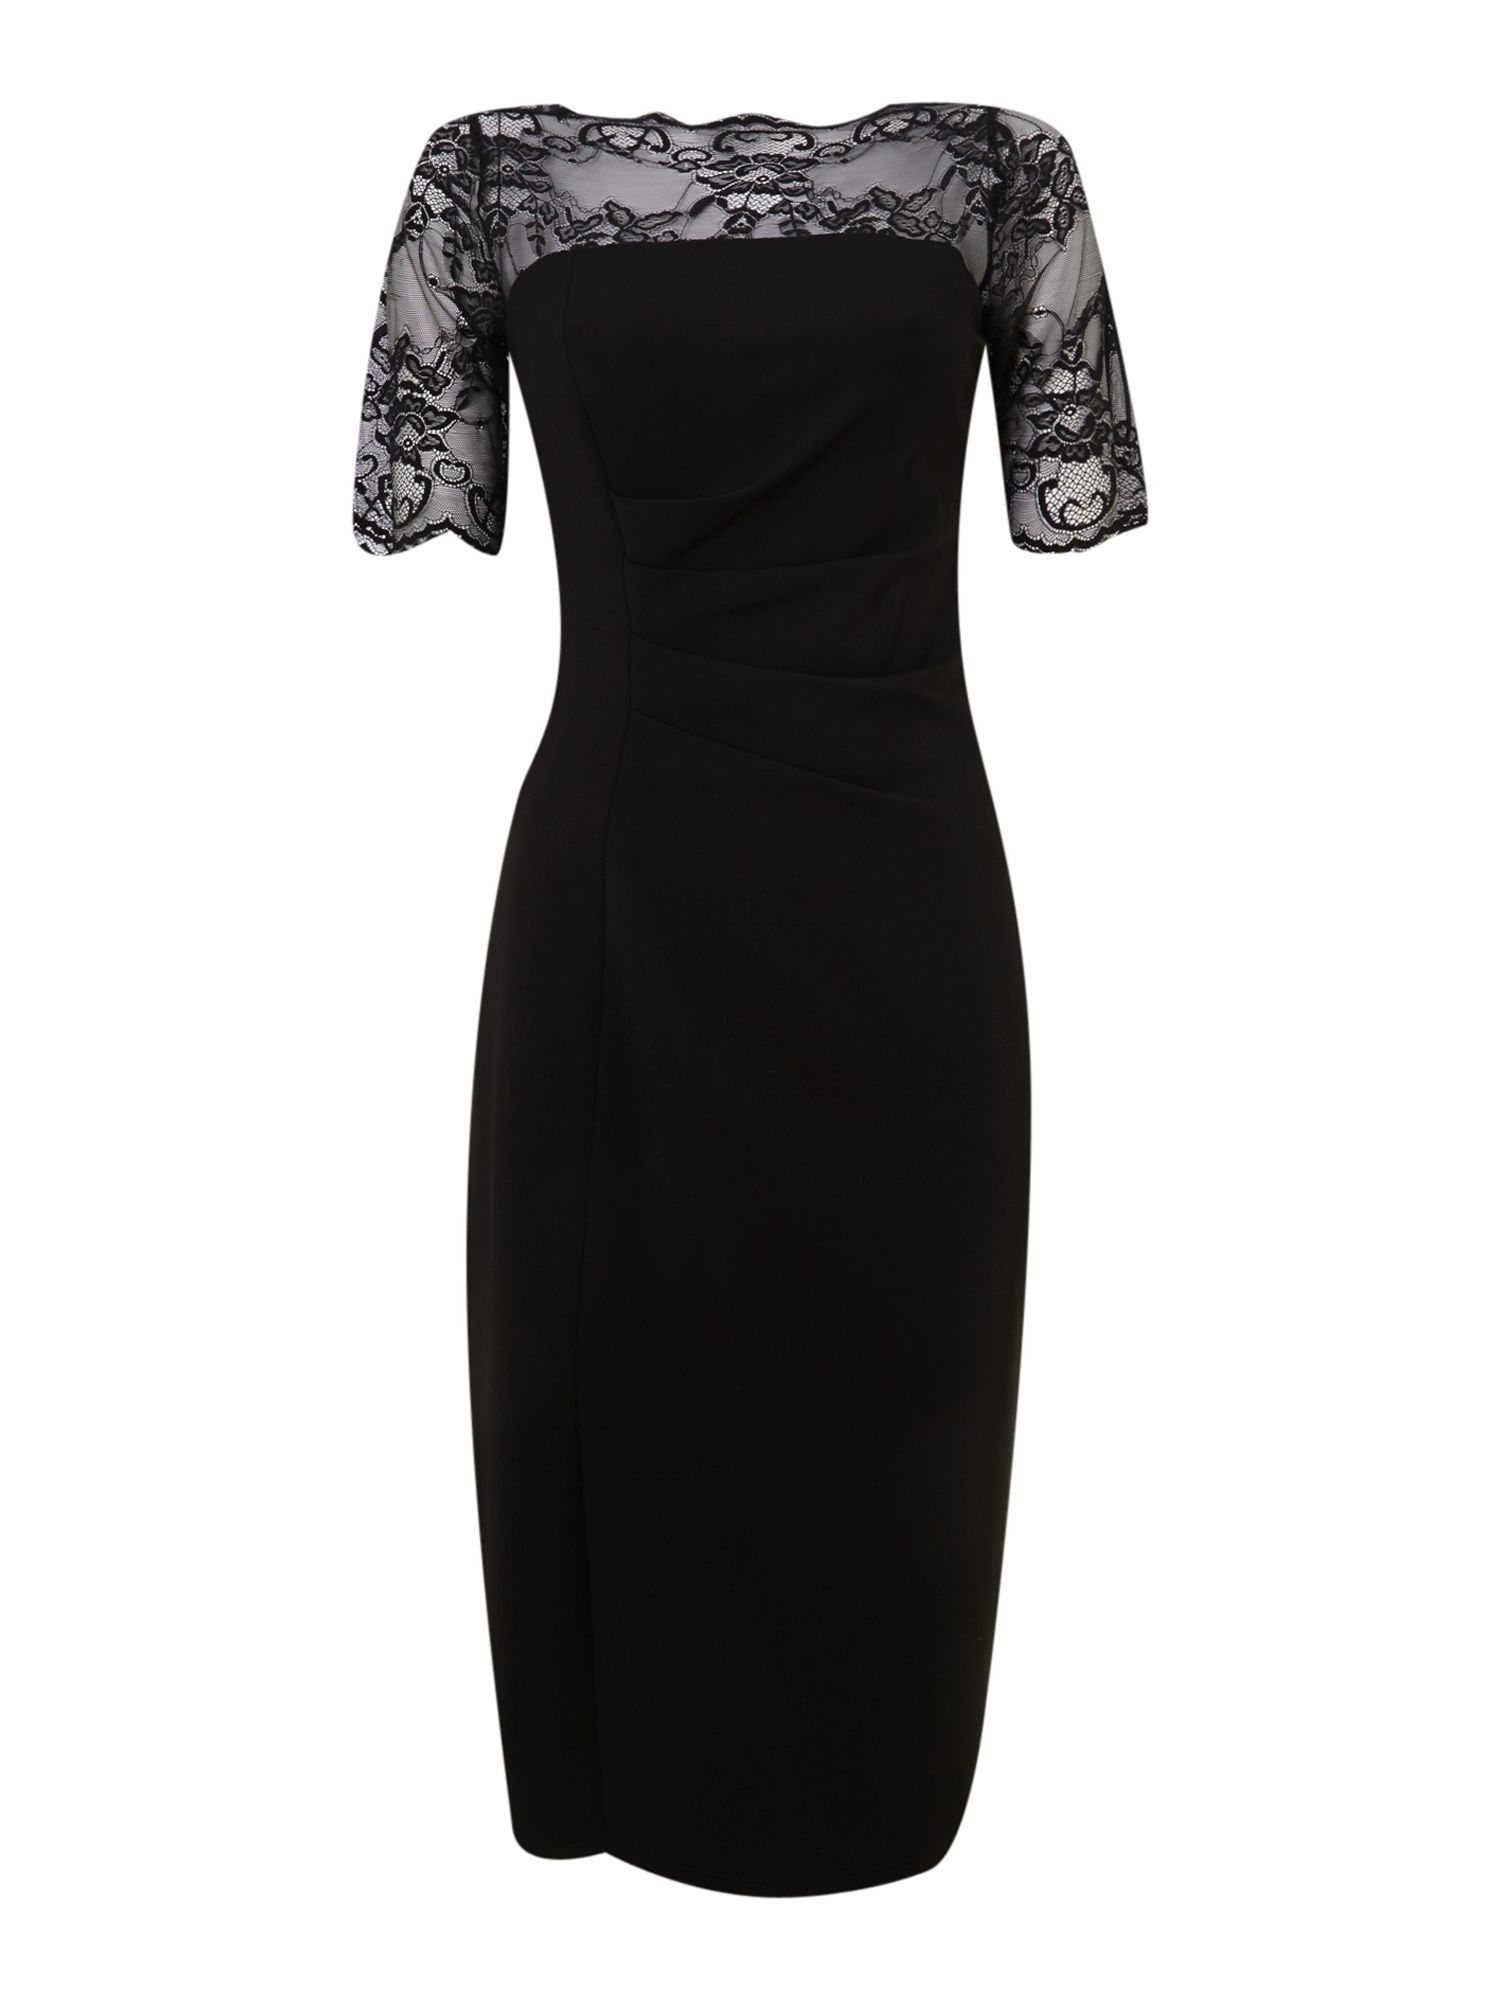 Shubette Long Sleeve Lace Dress in Black | Lyst